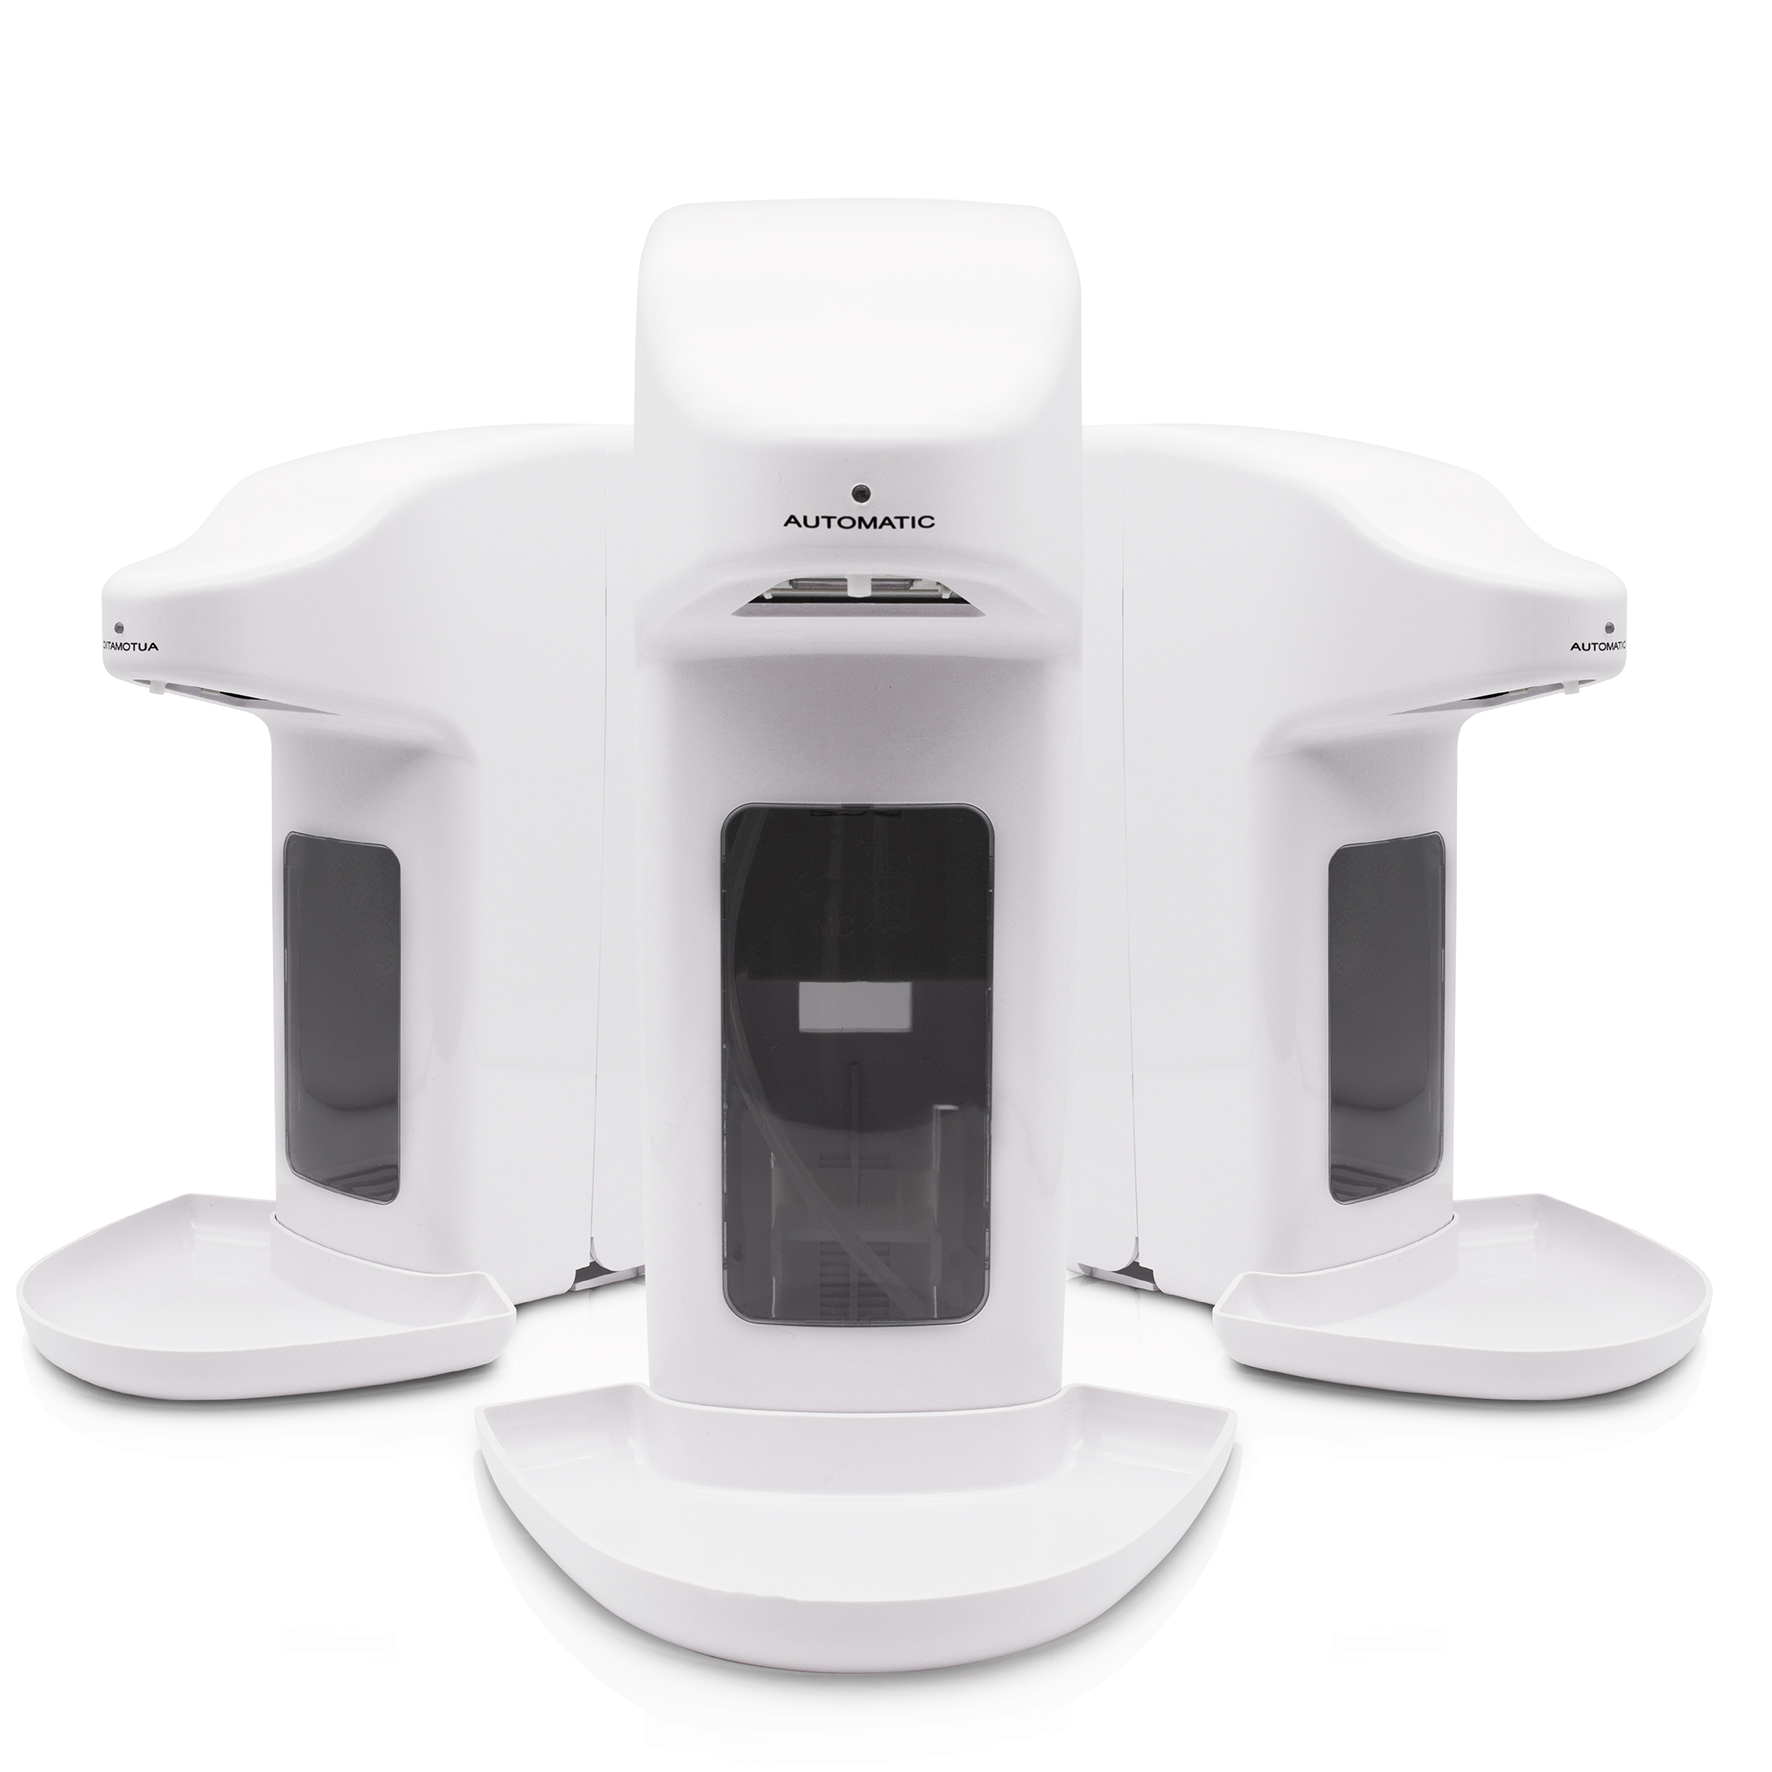 Loción,etc VADIV Dispensador de Jabón Automático Sensor de Infrarrojos dispensador de jabón Touchless Base Impermeable para Cocina o baño para Jabón Líquido Dorado Champú 